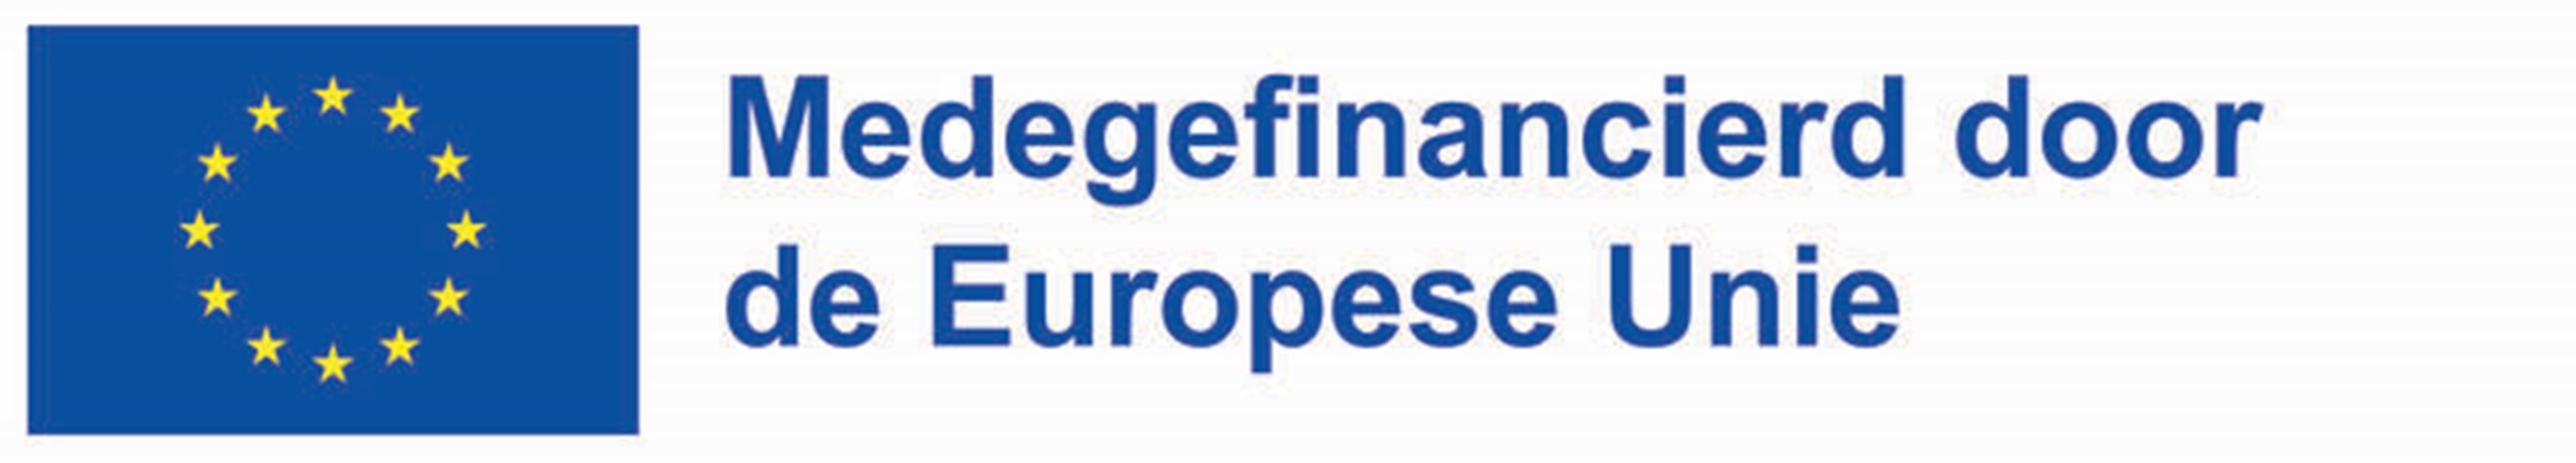 Logo EU en tekst 'Medegefinancierd door de Europese Unie'